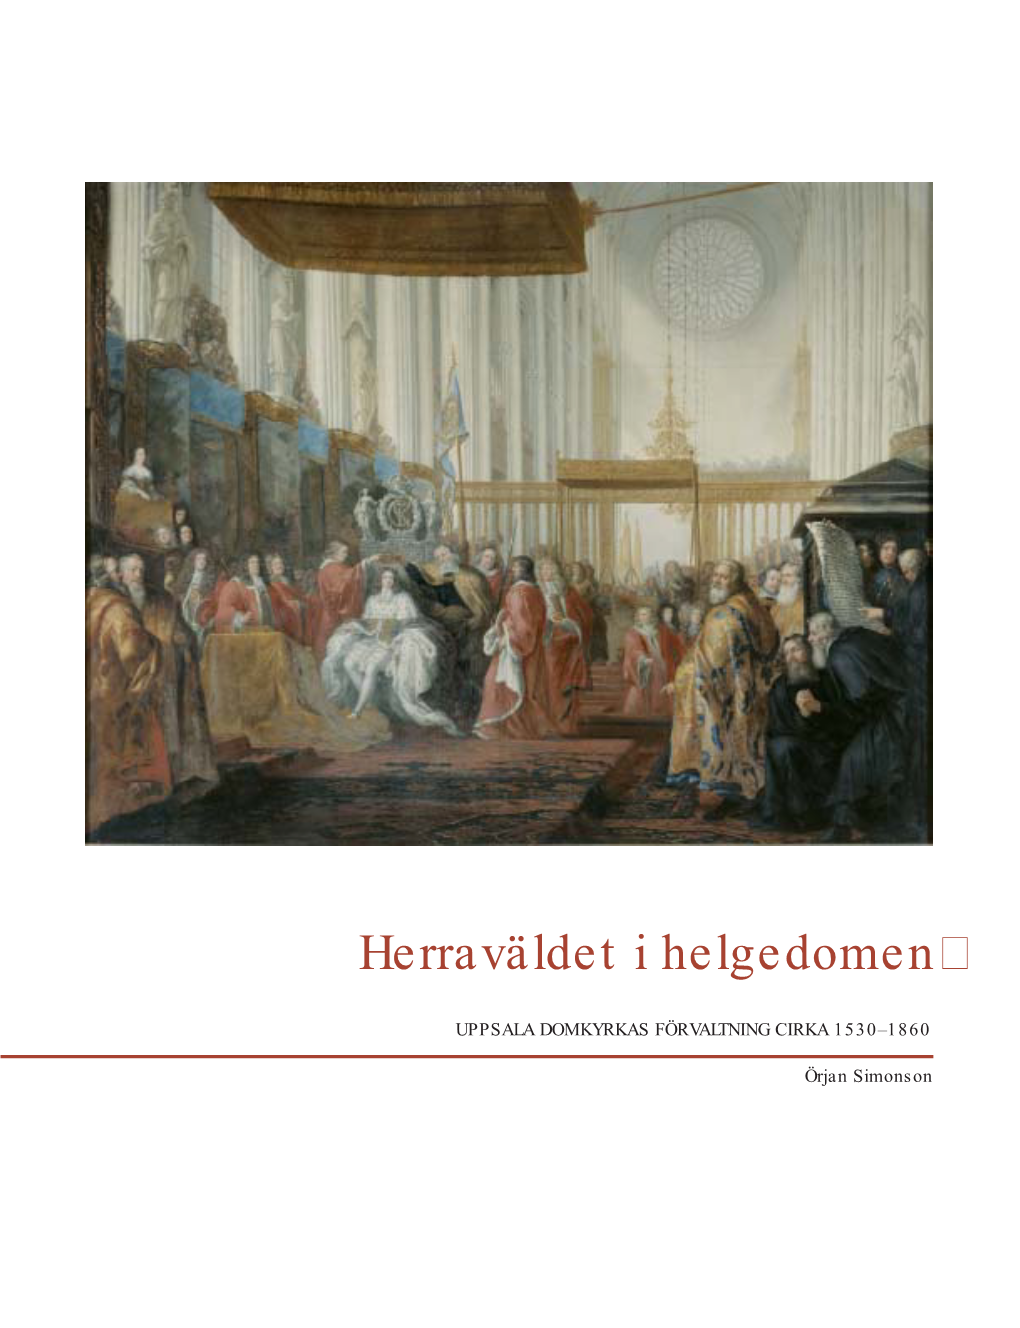 Herraväldet I Helgedomen: Uppsala Domkyrkas Förvaltning Cirka 1530-1860